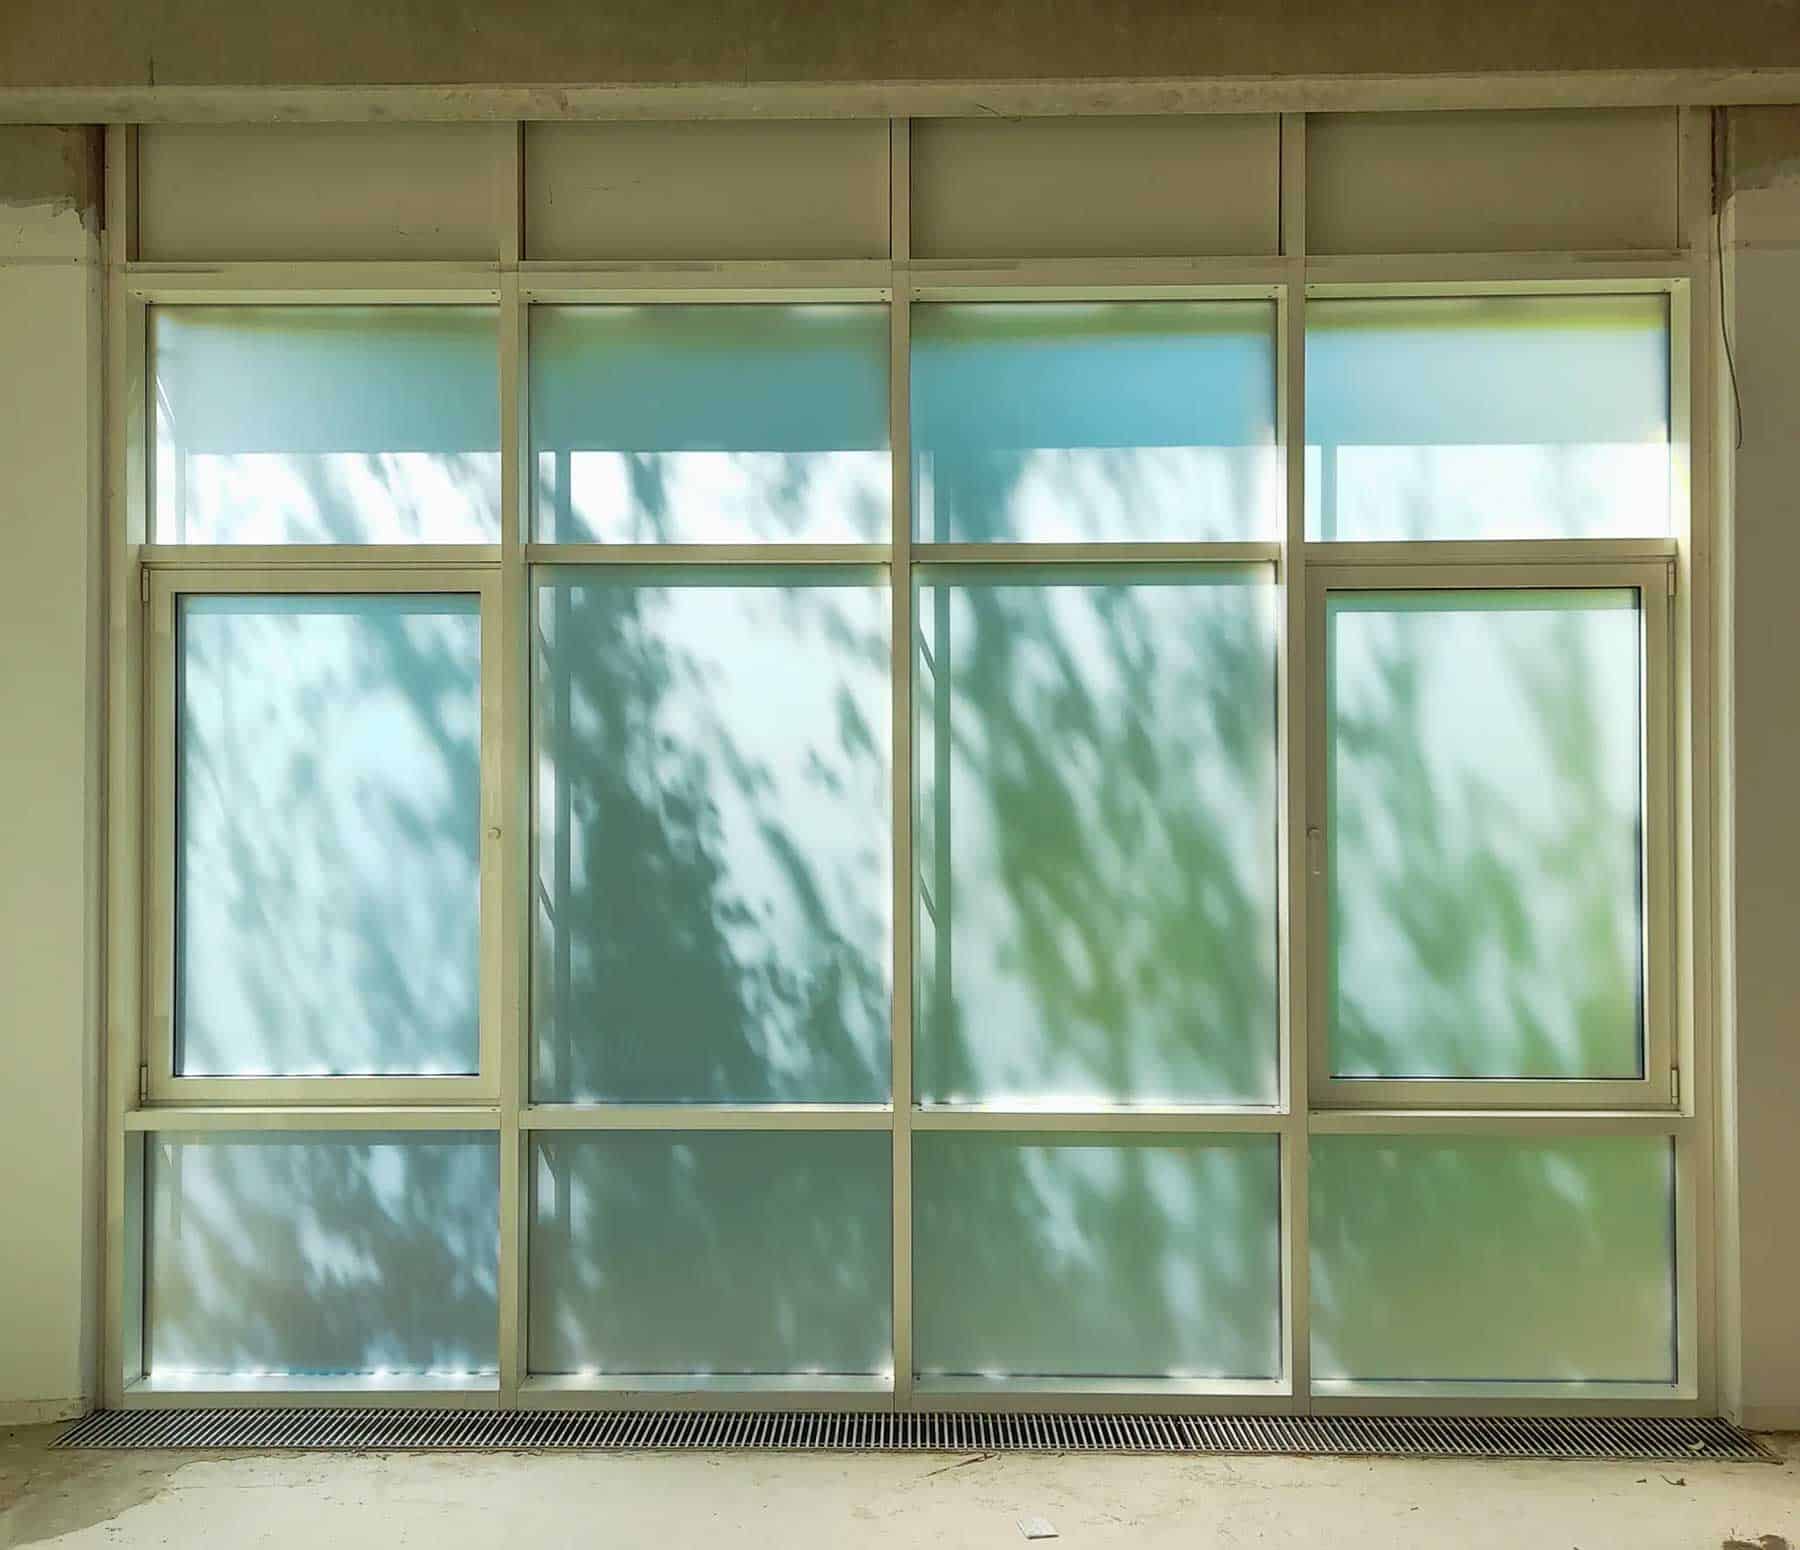 Mehrteiliges bodentiefes Fenster komplett beklebt mit Milchglasfolie für absoluten Sichtschutz nach Tisax Zertifizierung.